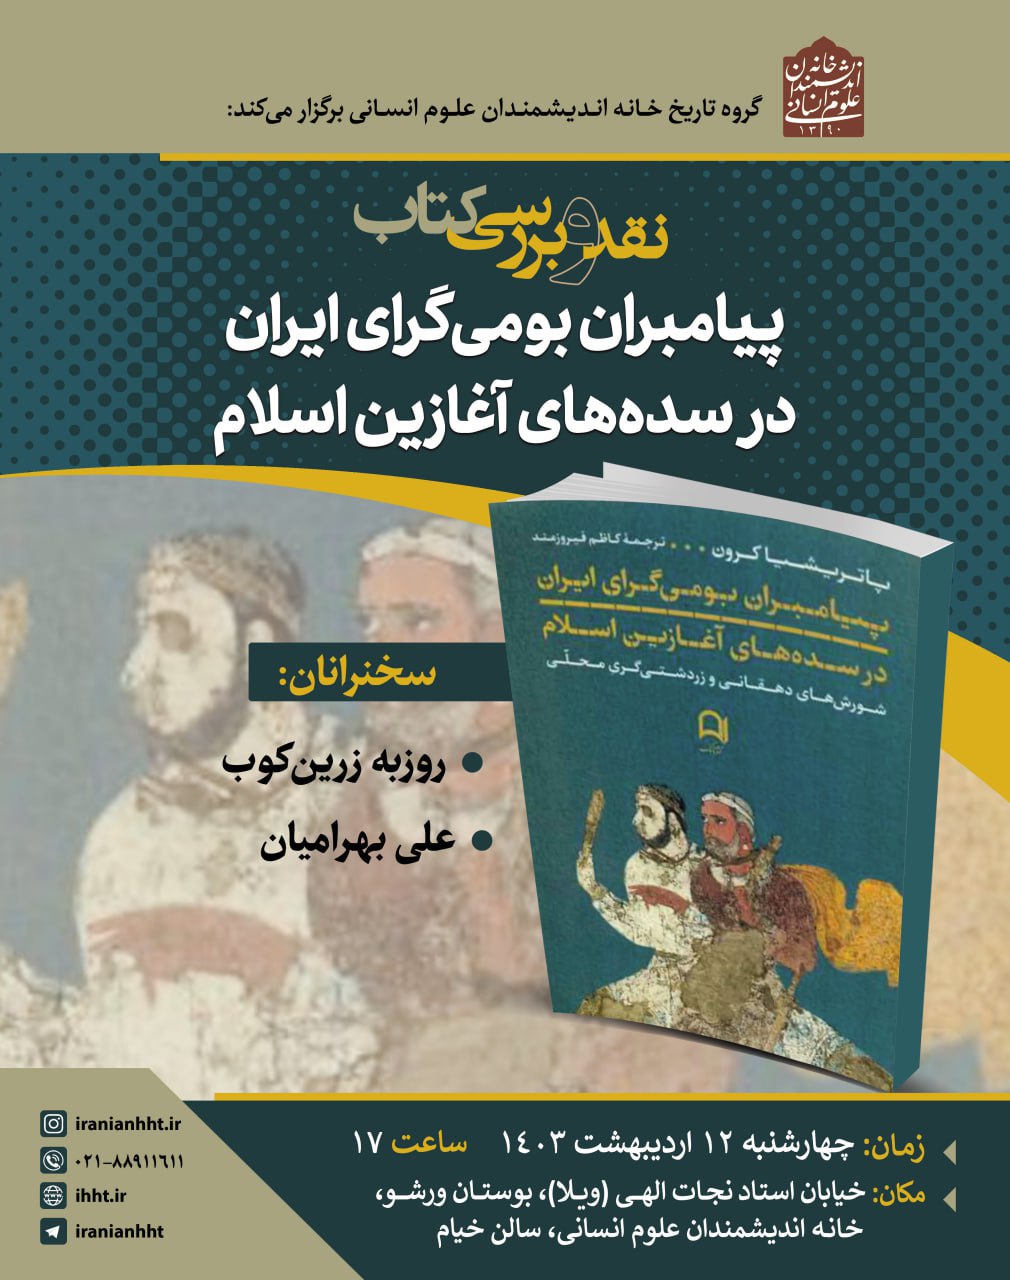 نشست "نقد و بررسی کتاب پیامبران بومی گرای ایران در سده های آغازین اسلام" برگزار می شود